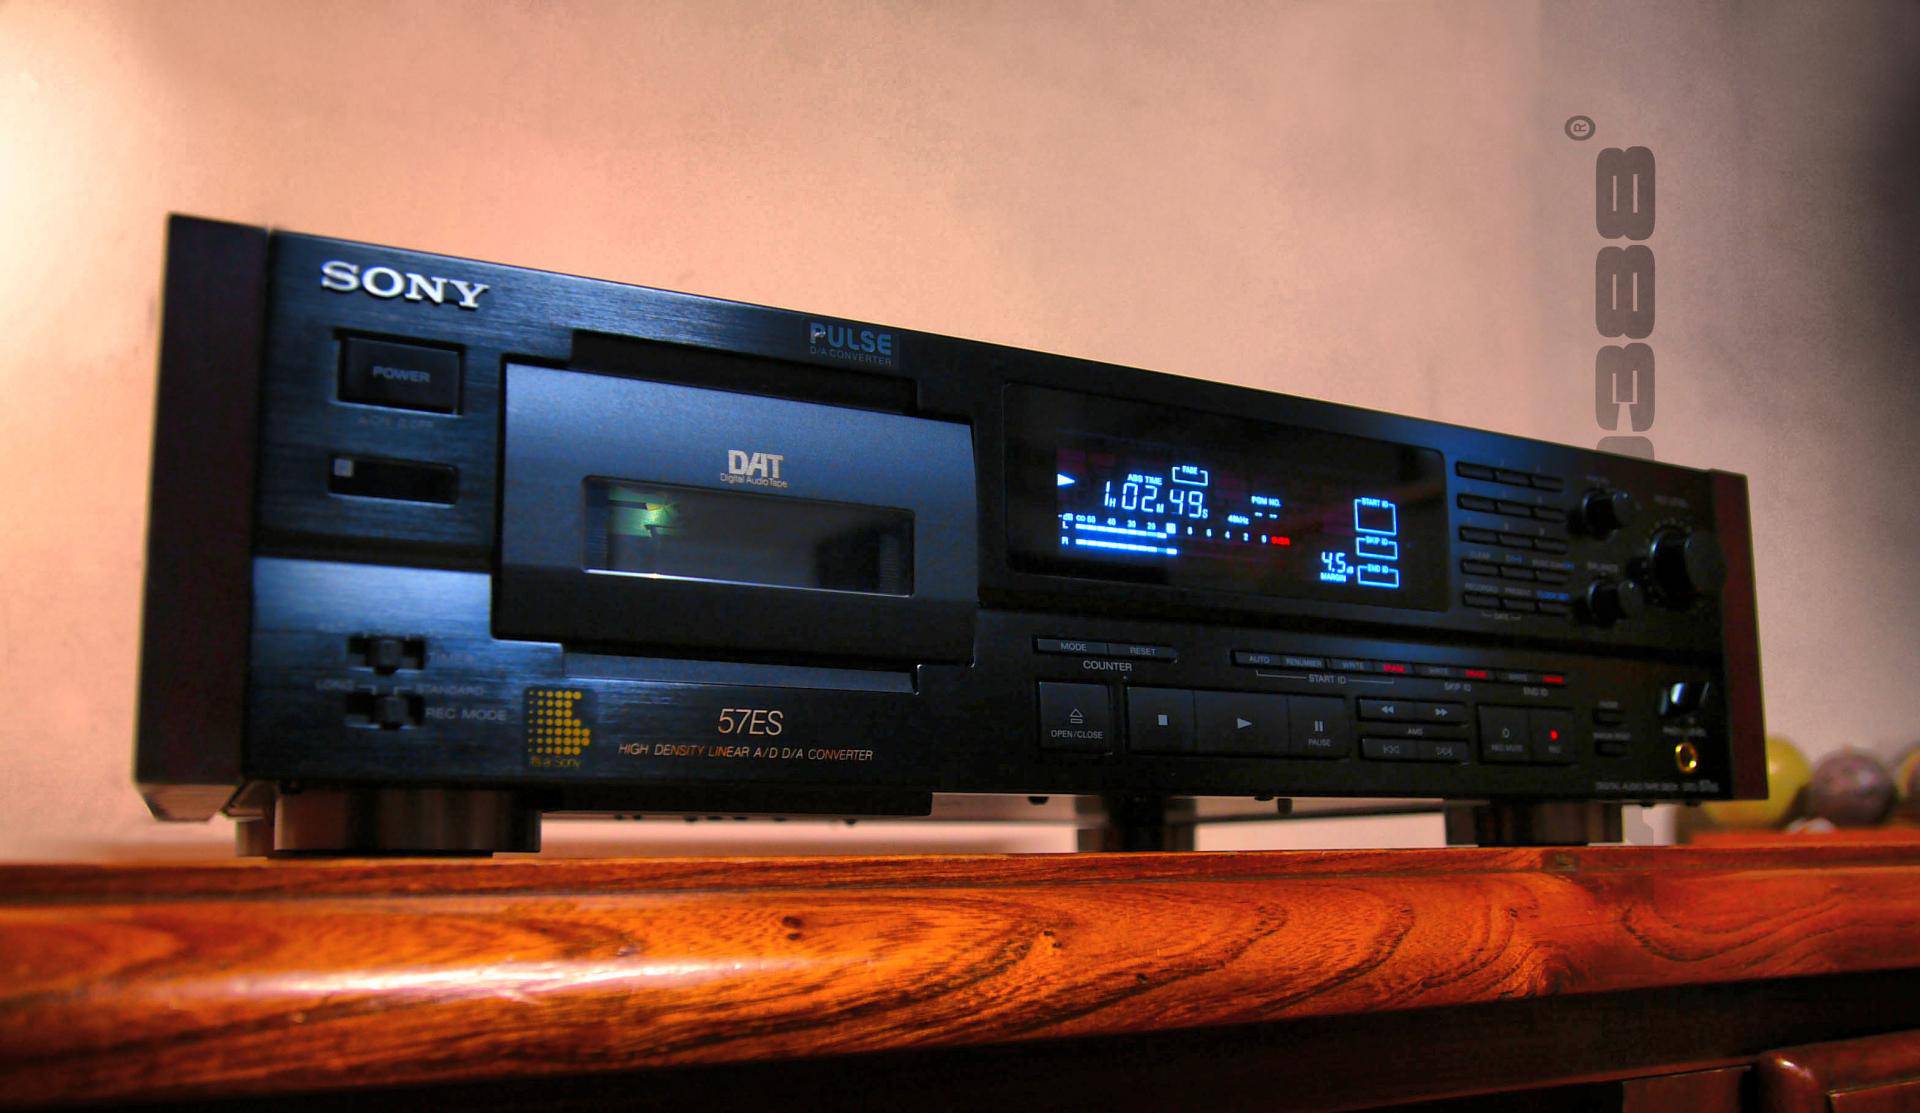 Sony DTC-57ES